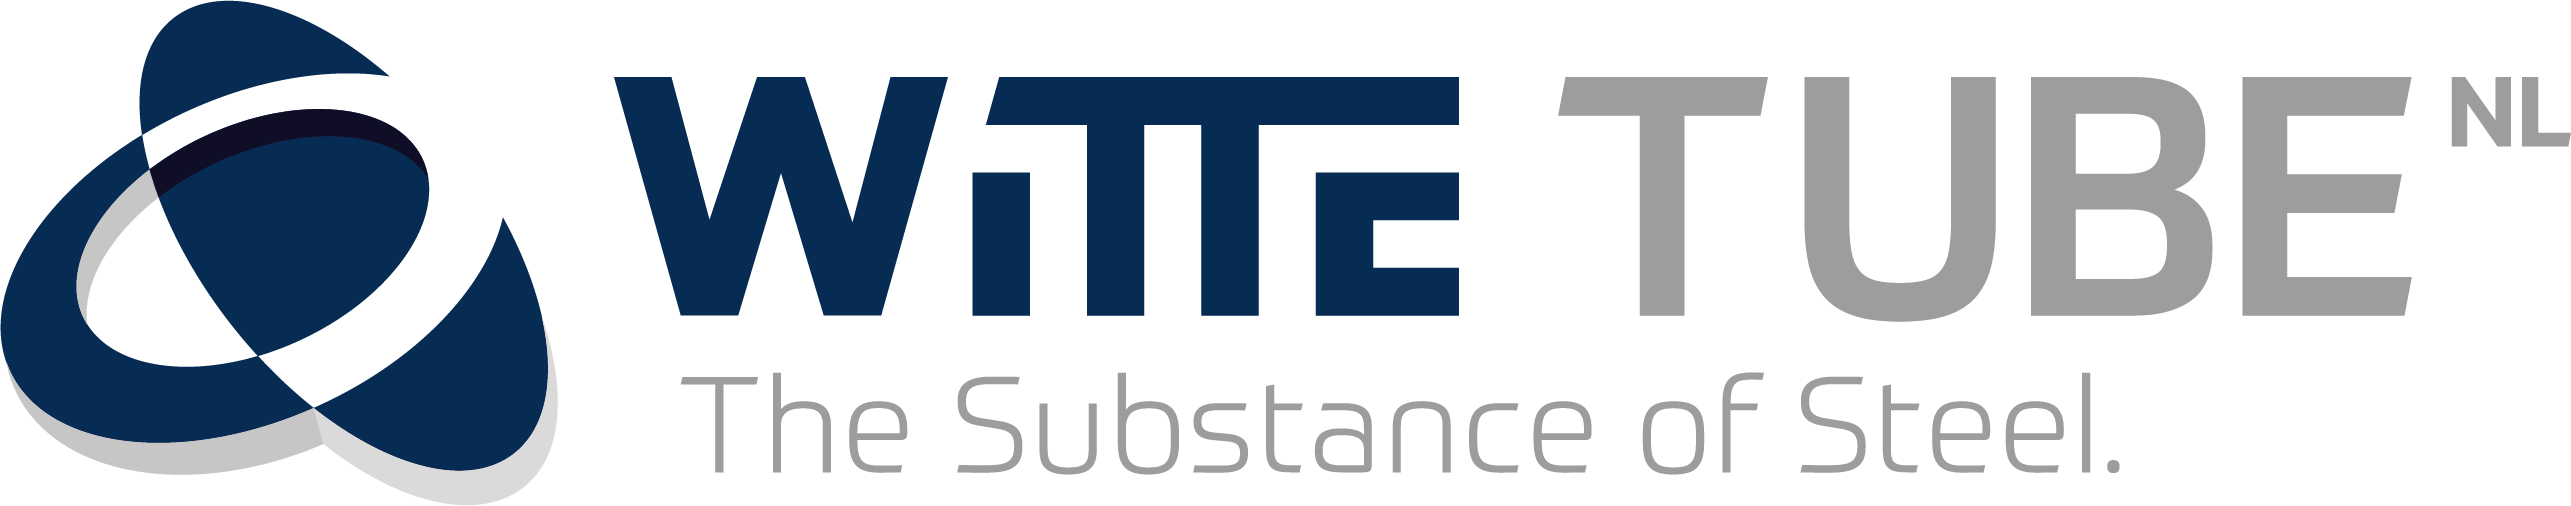 Logo WITTE Tube NL 